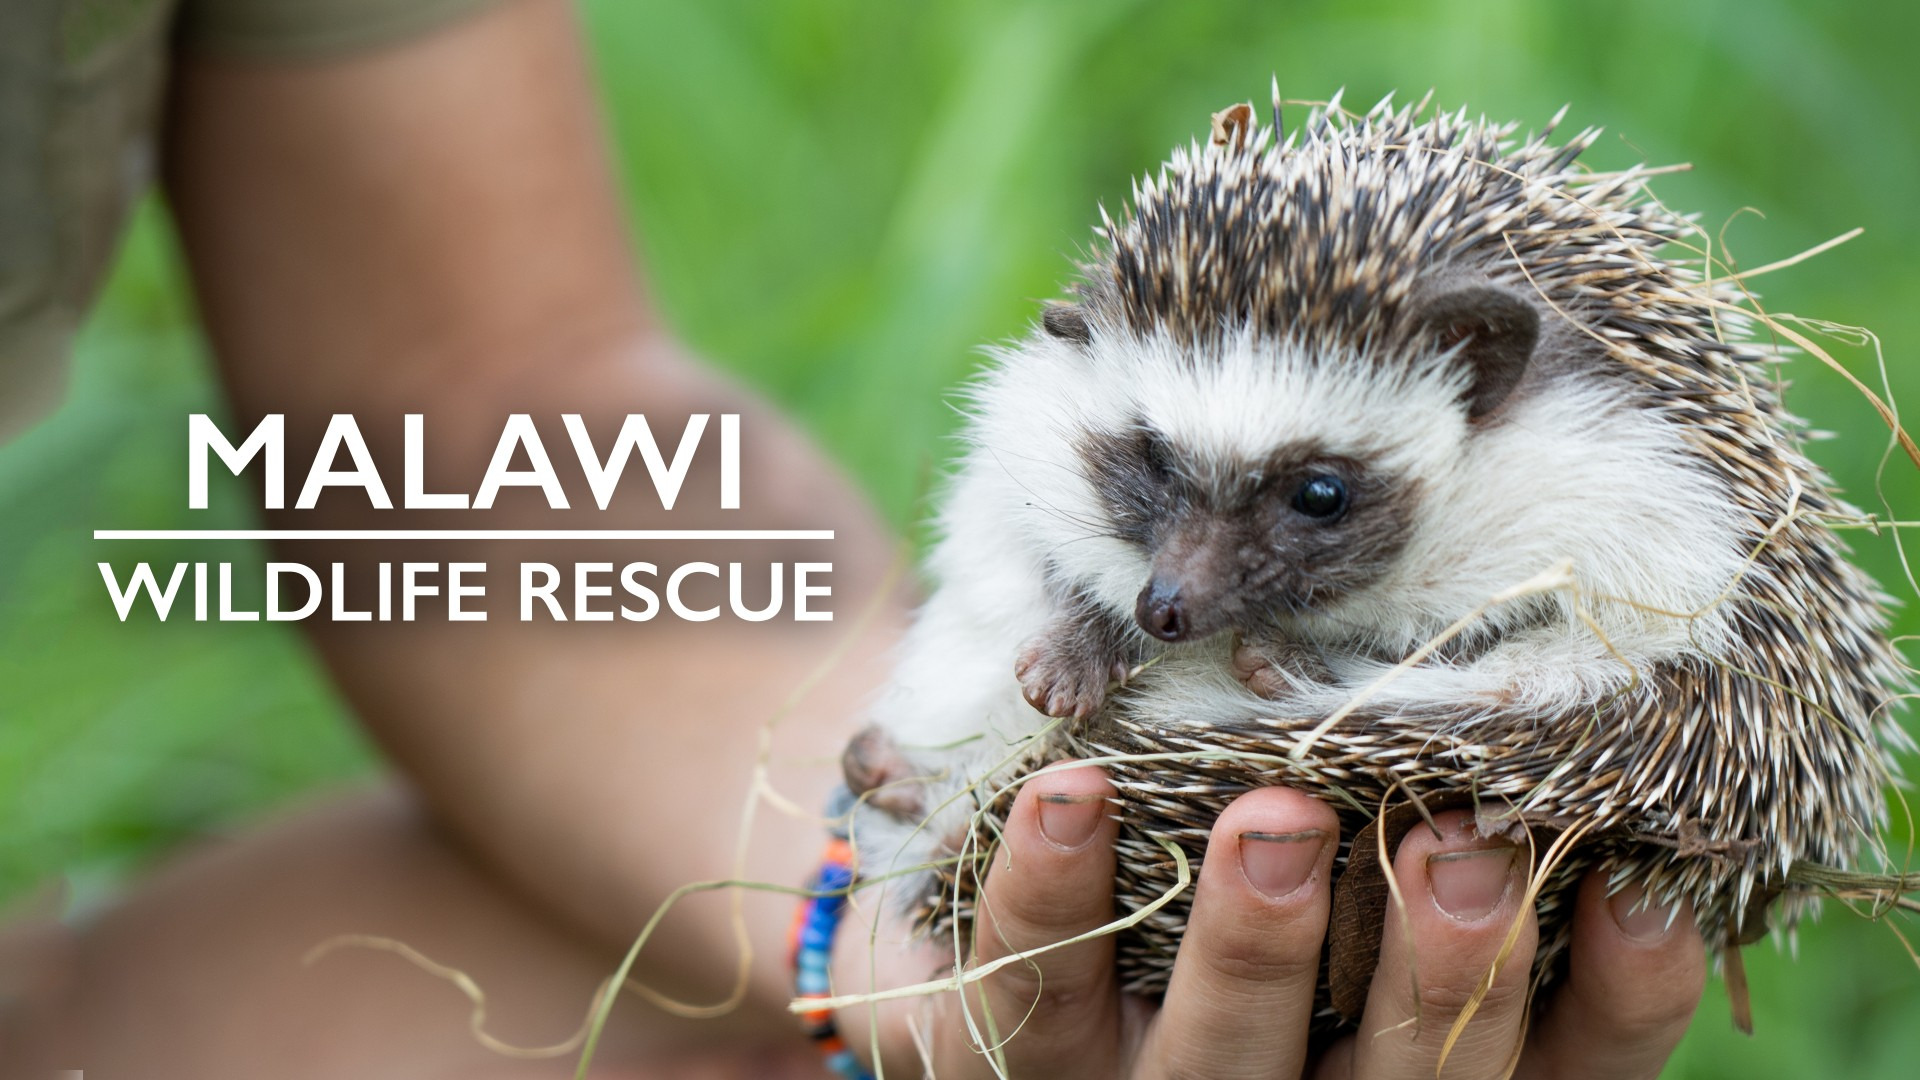 Show Malawi Wildlife Rescue